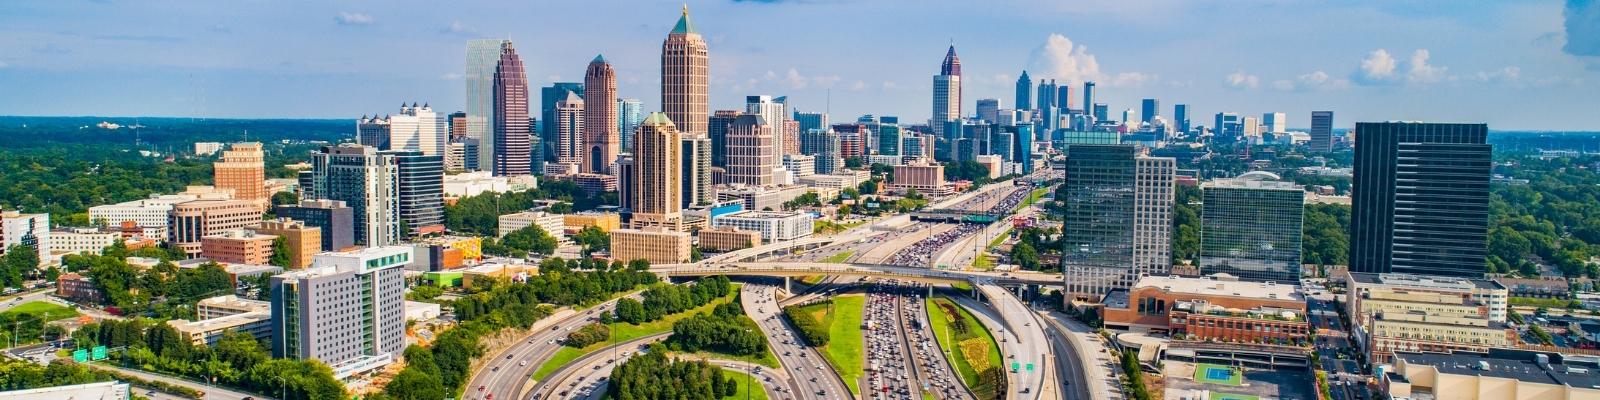 Top 5 Digital Marketing Courses in Atlanta